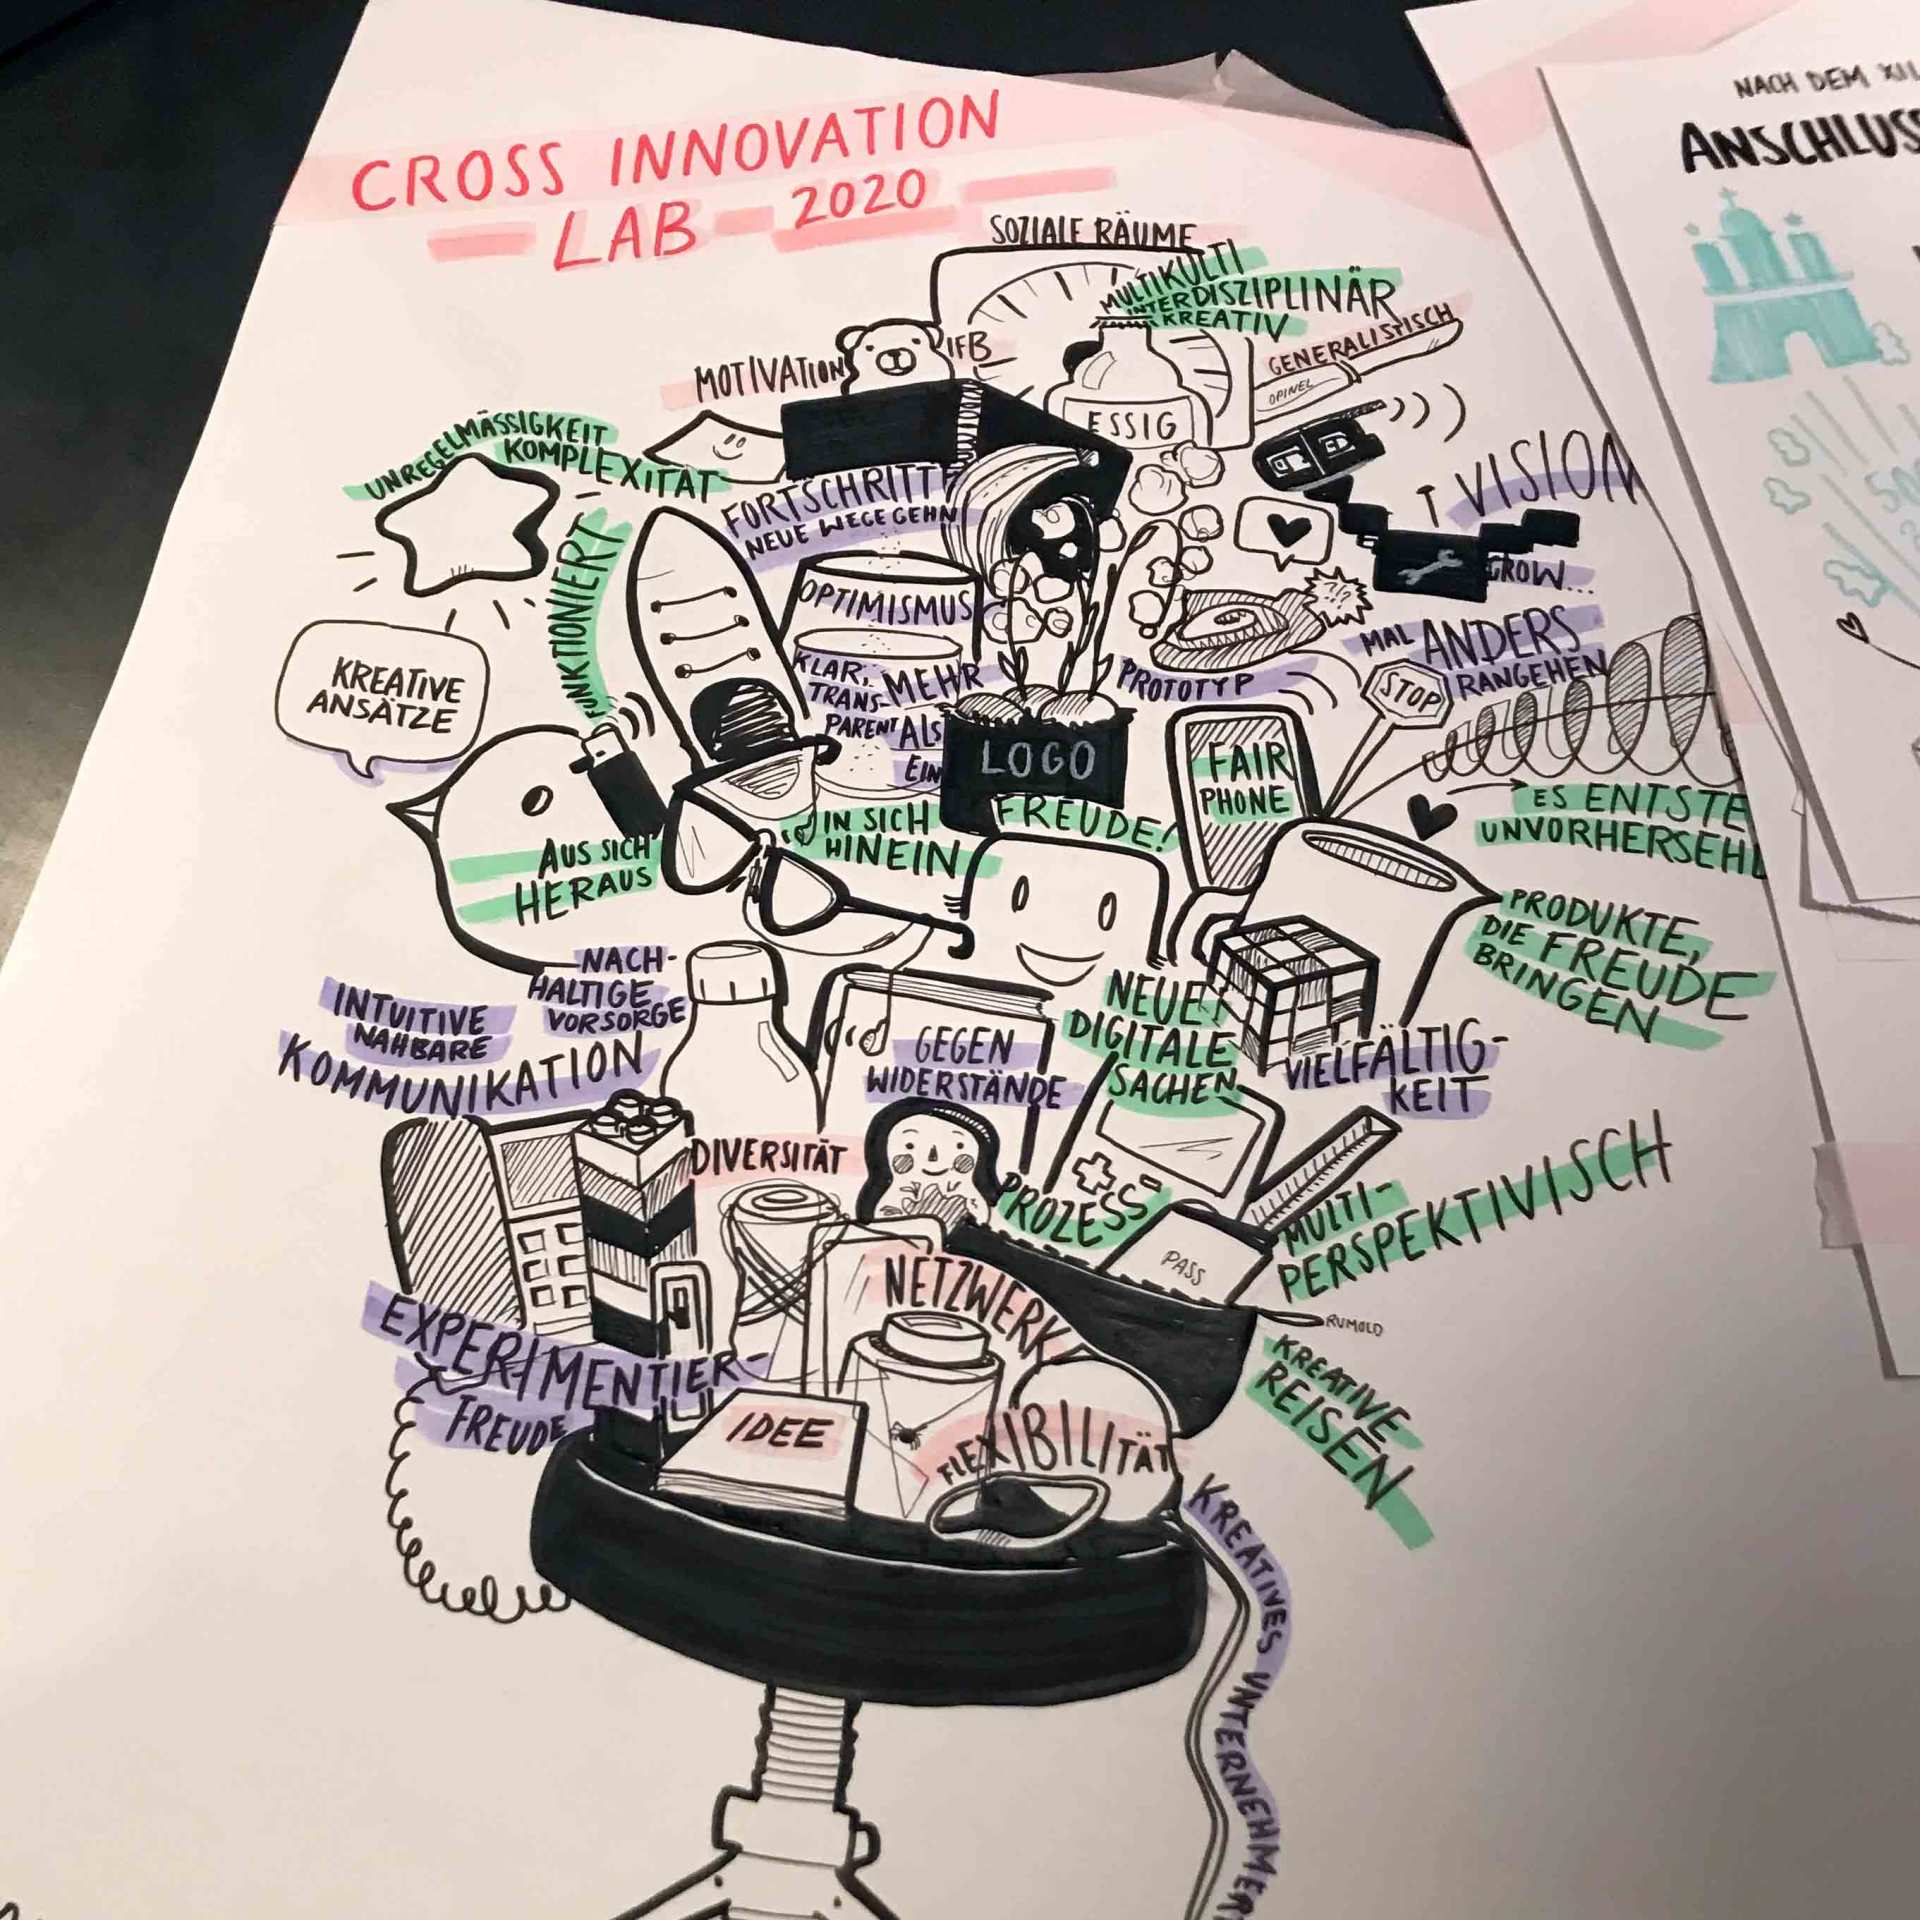 Dieses Graphic Recording zeigt, was die Teilnehmer mit ins Cross Innovation Lab mitbringen.